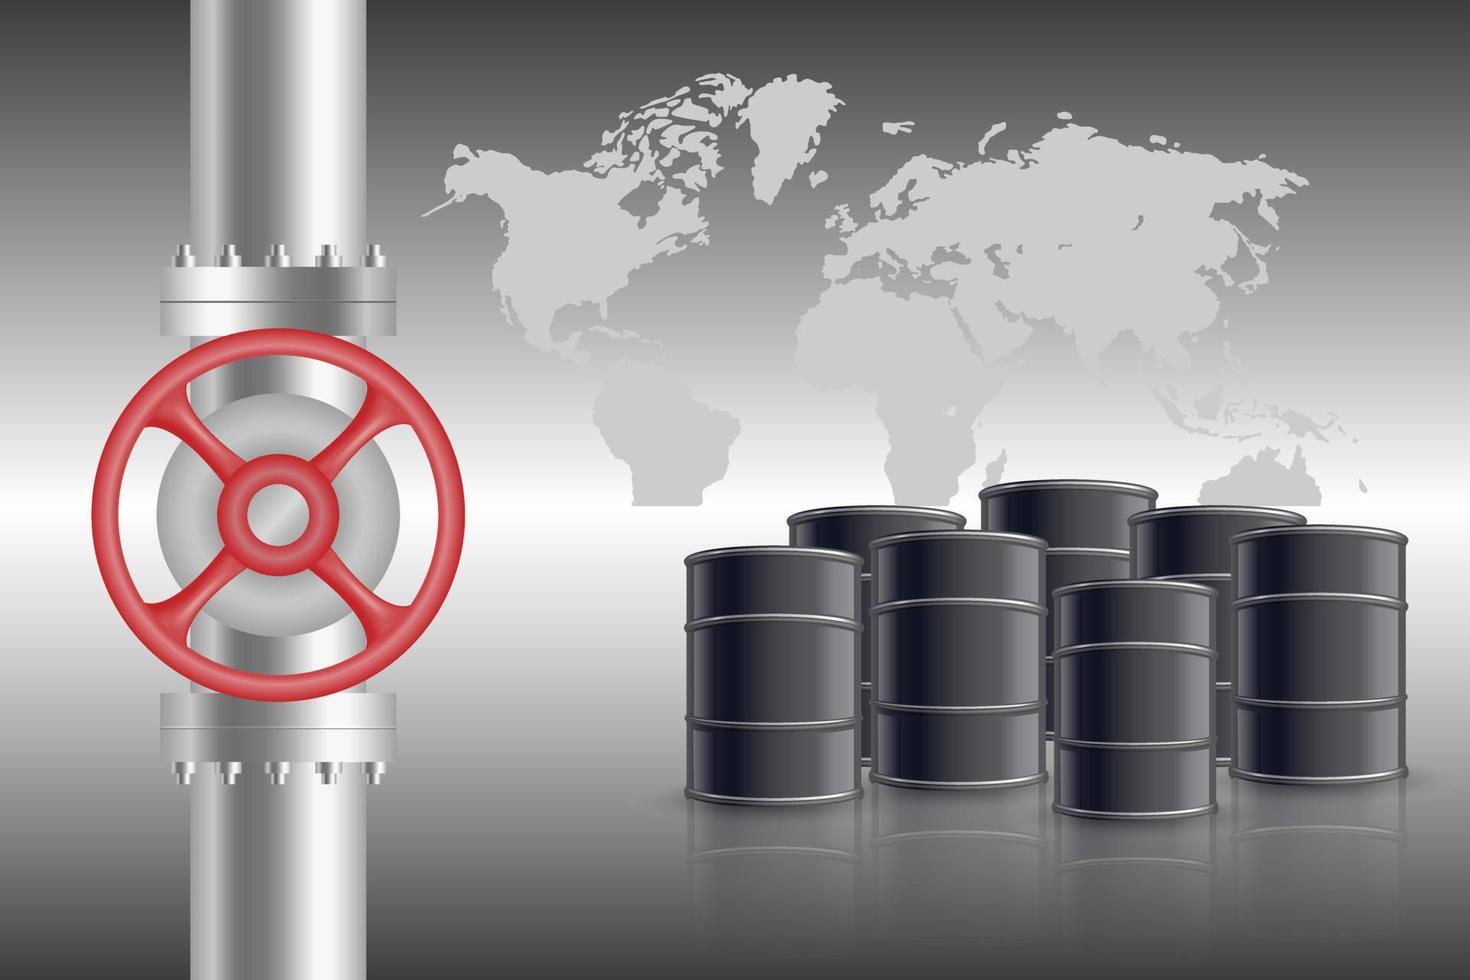 tuberías de gas o petróleo con barriles. oleoducto y gasoducto vector